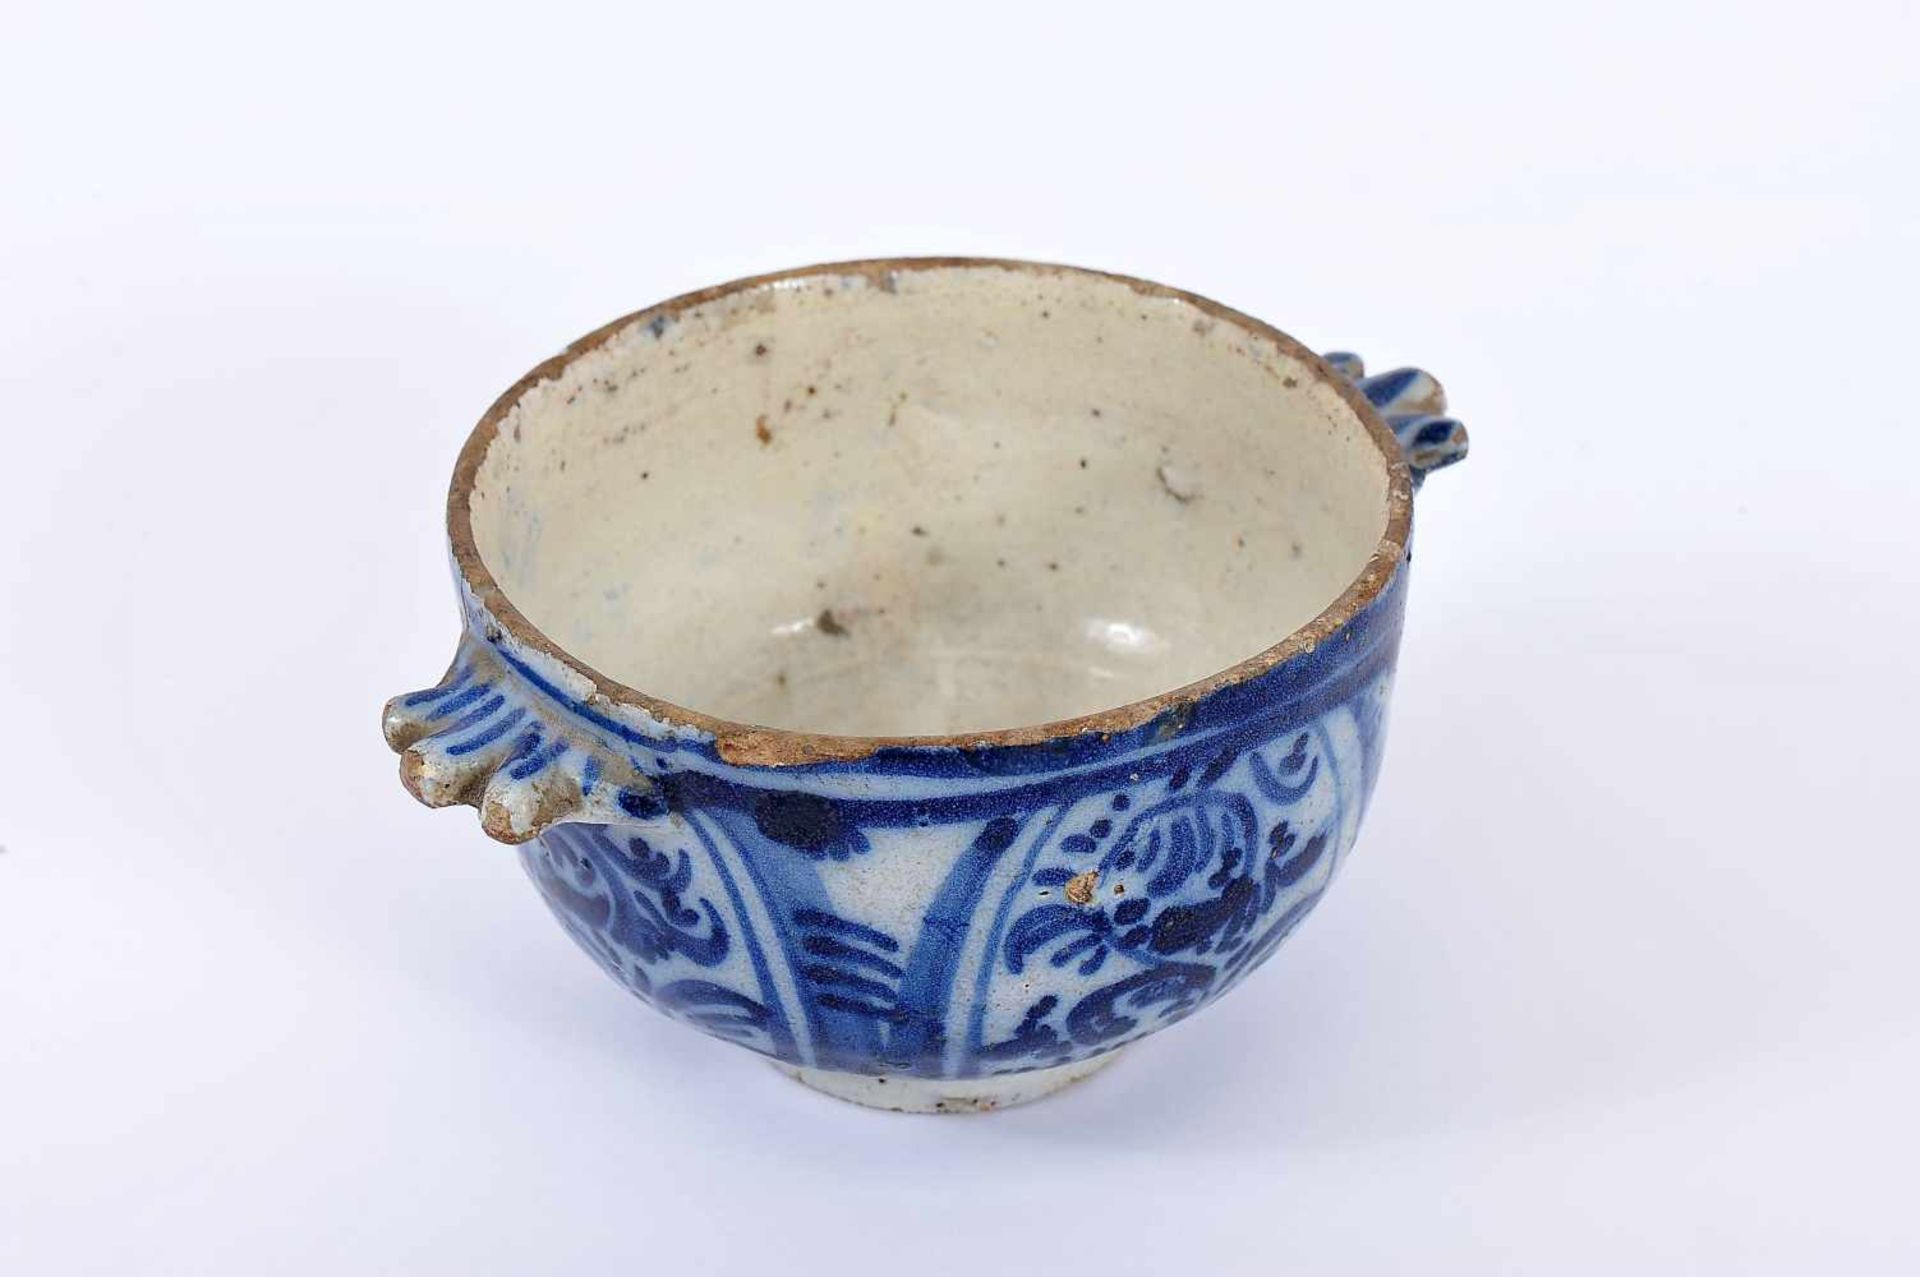 A Bowl, faience known as "Monte Sinai", blue decoration "Flowers", Portuguese, 17th C./18th. C., - Bild 2 aus 2